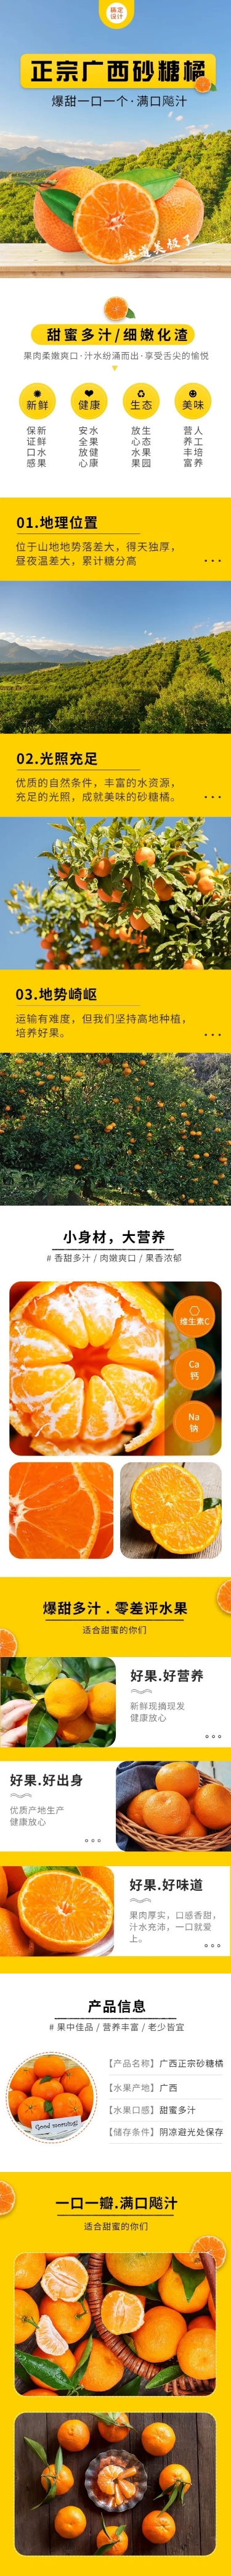 清新春上新食品生鲜水果橘子详情页预览效果